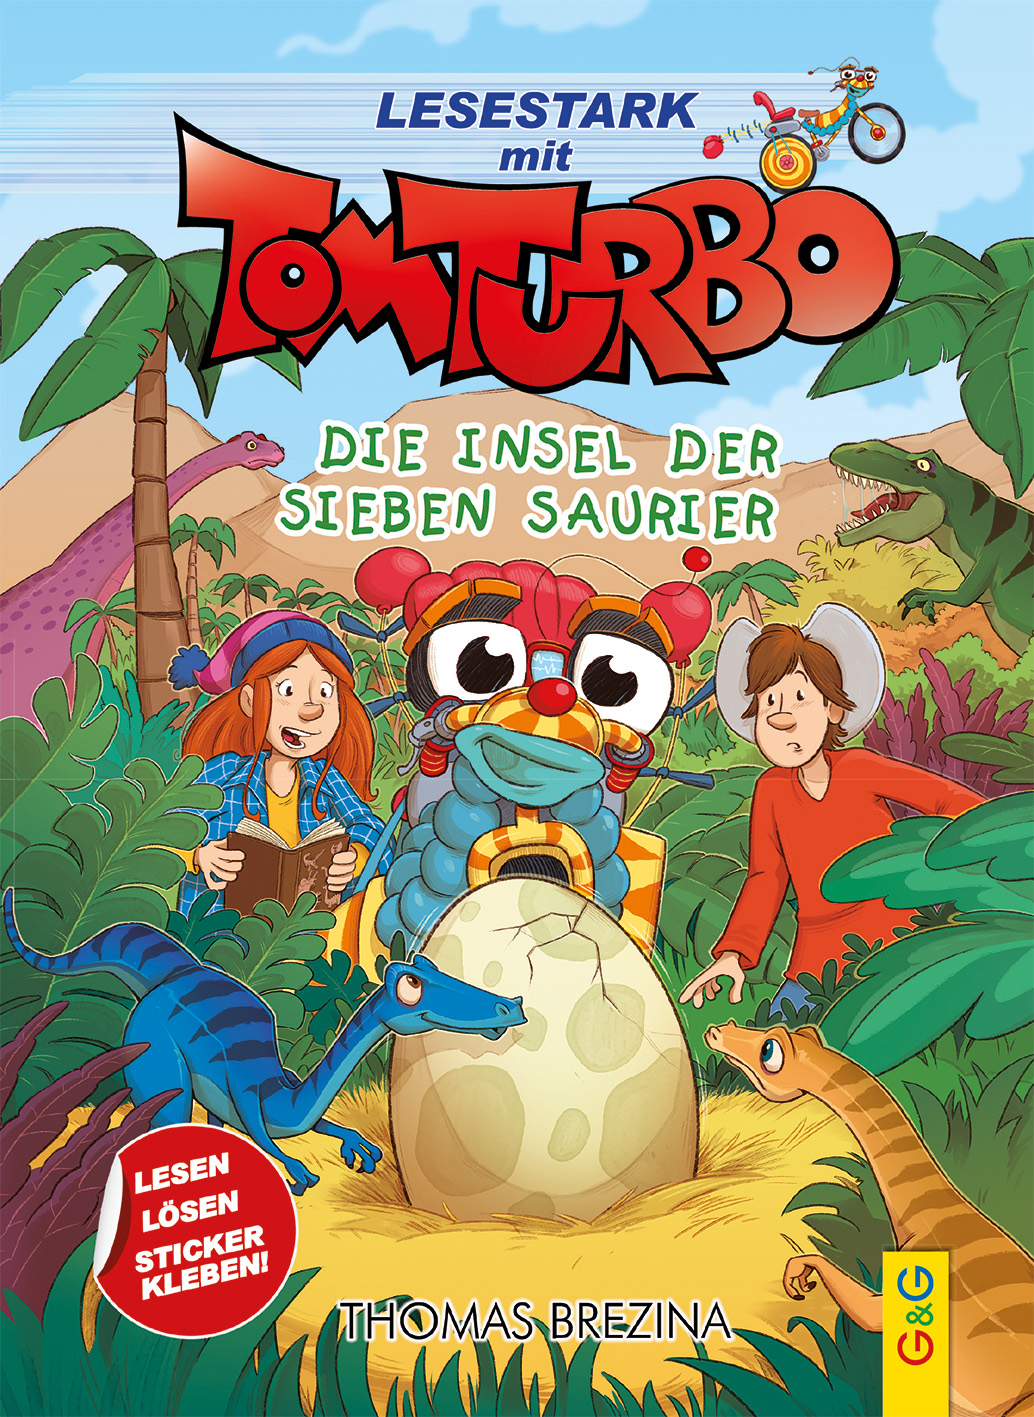 12,00€ Tom Turbo - Die Insel der sieben Saurier